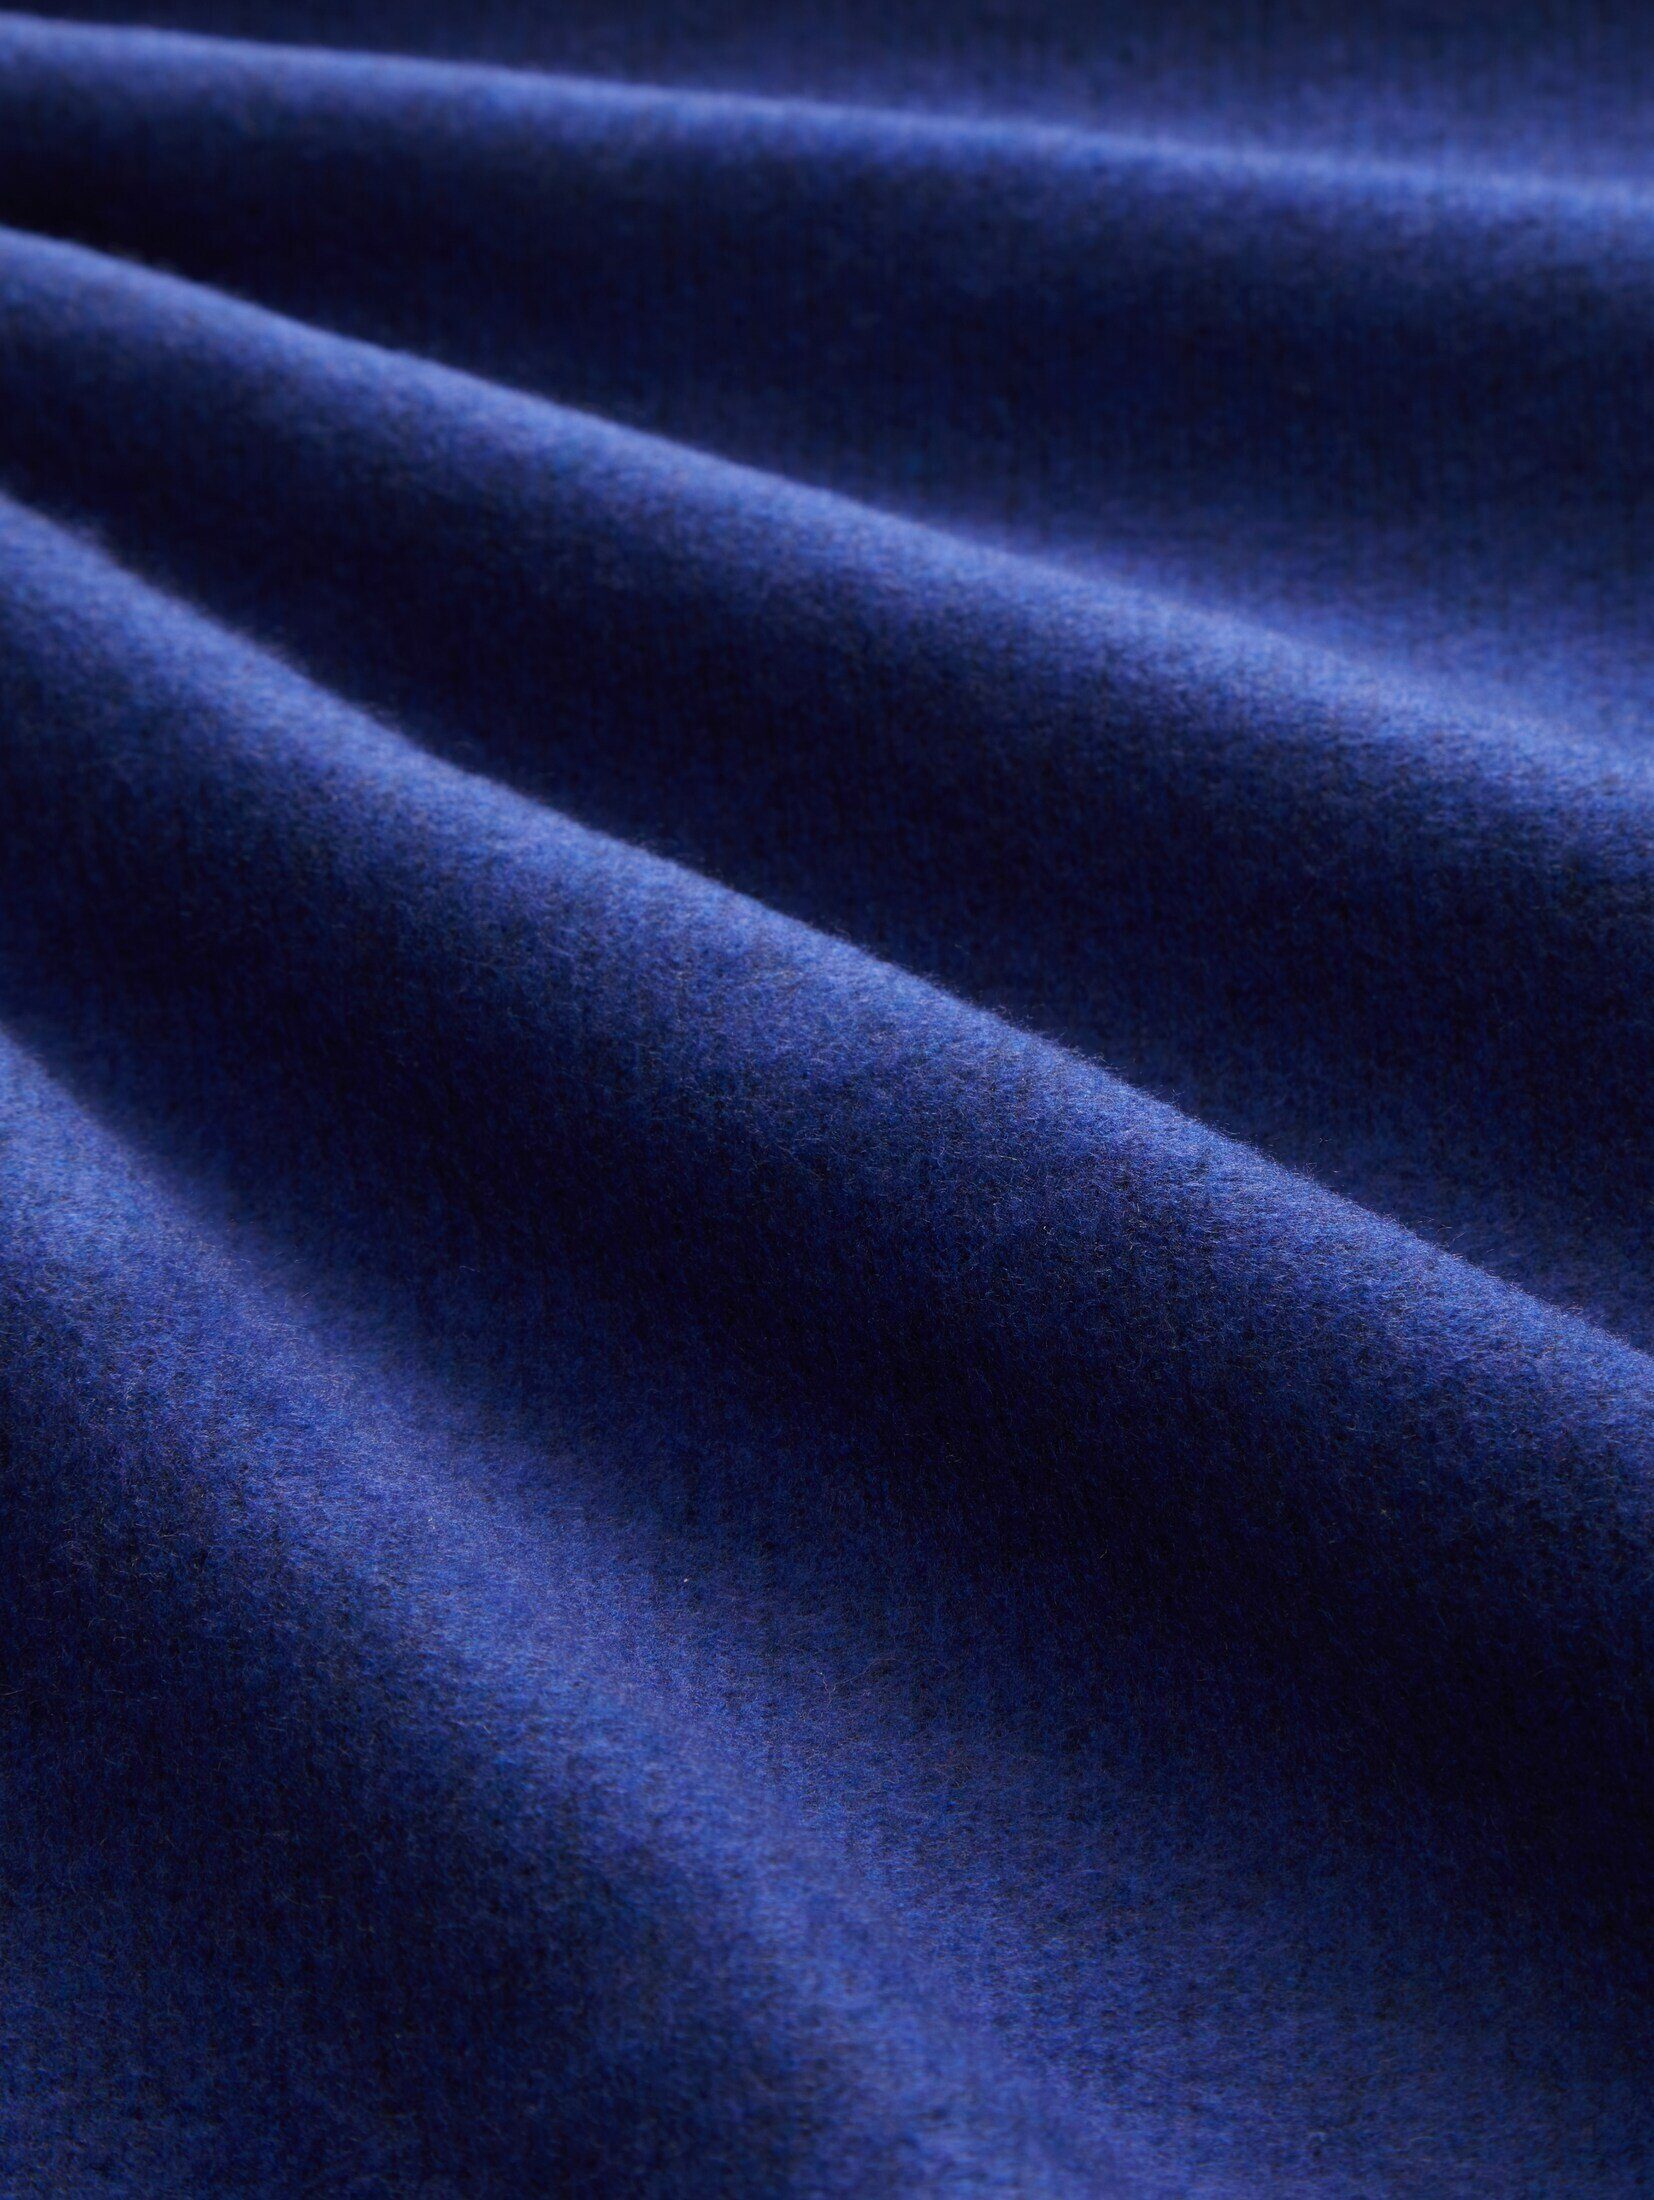 TOM Bequemes crest Sweatshirt Rollkragen Sweatshirt melange TAILOR mit blue